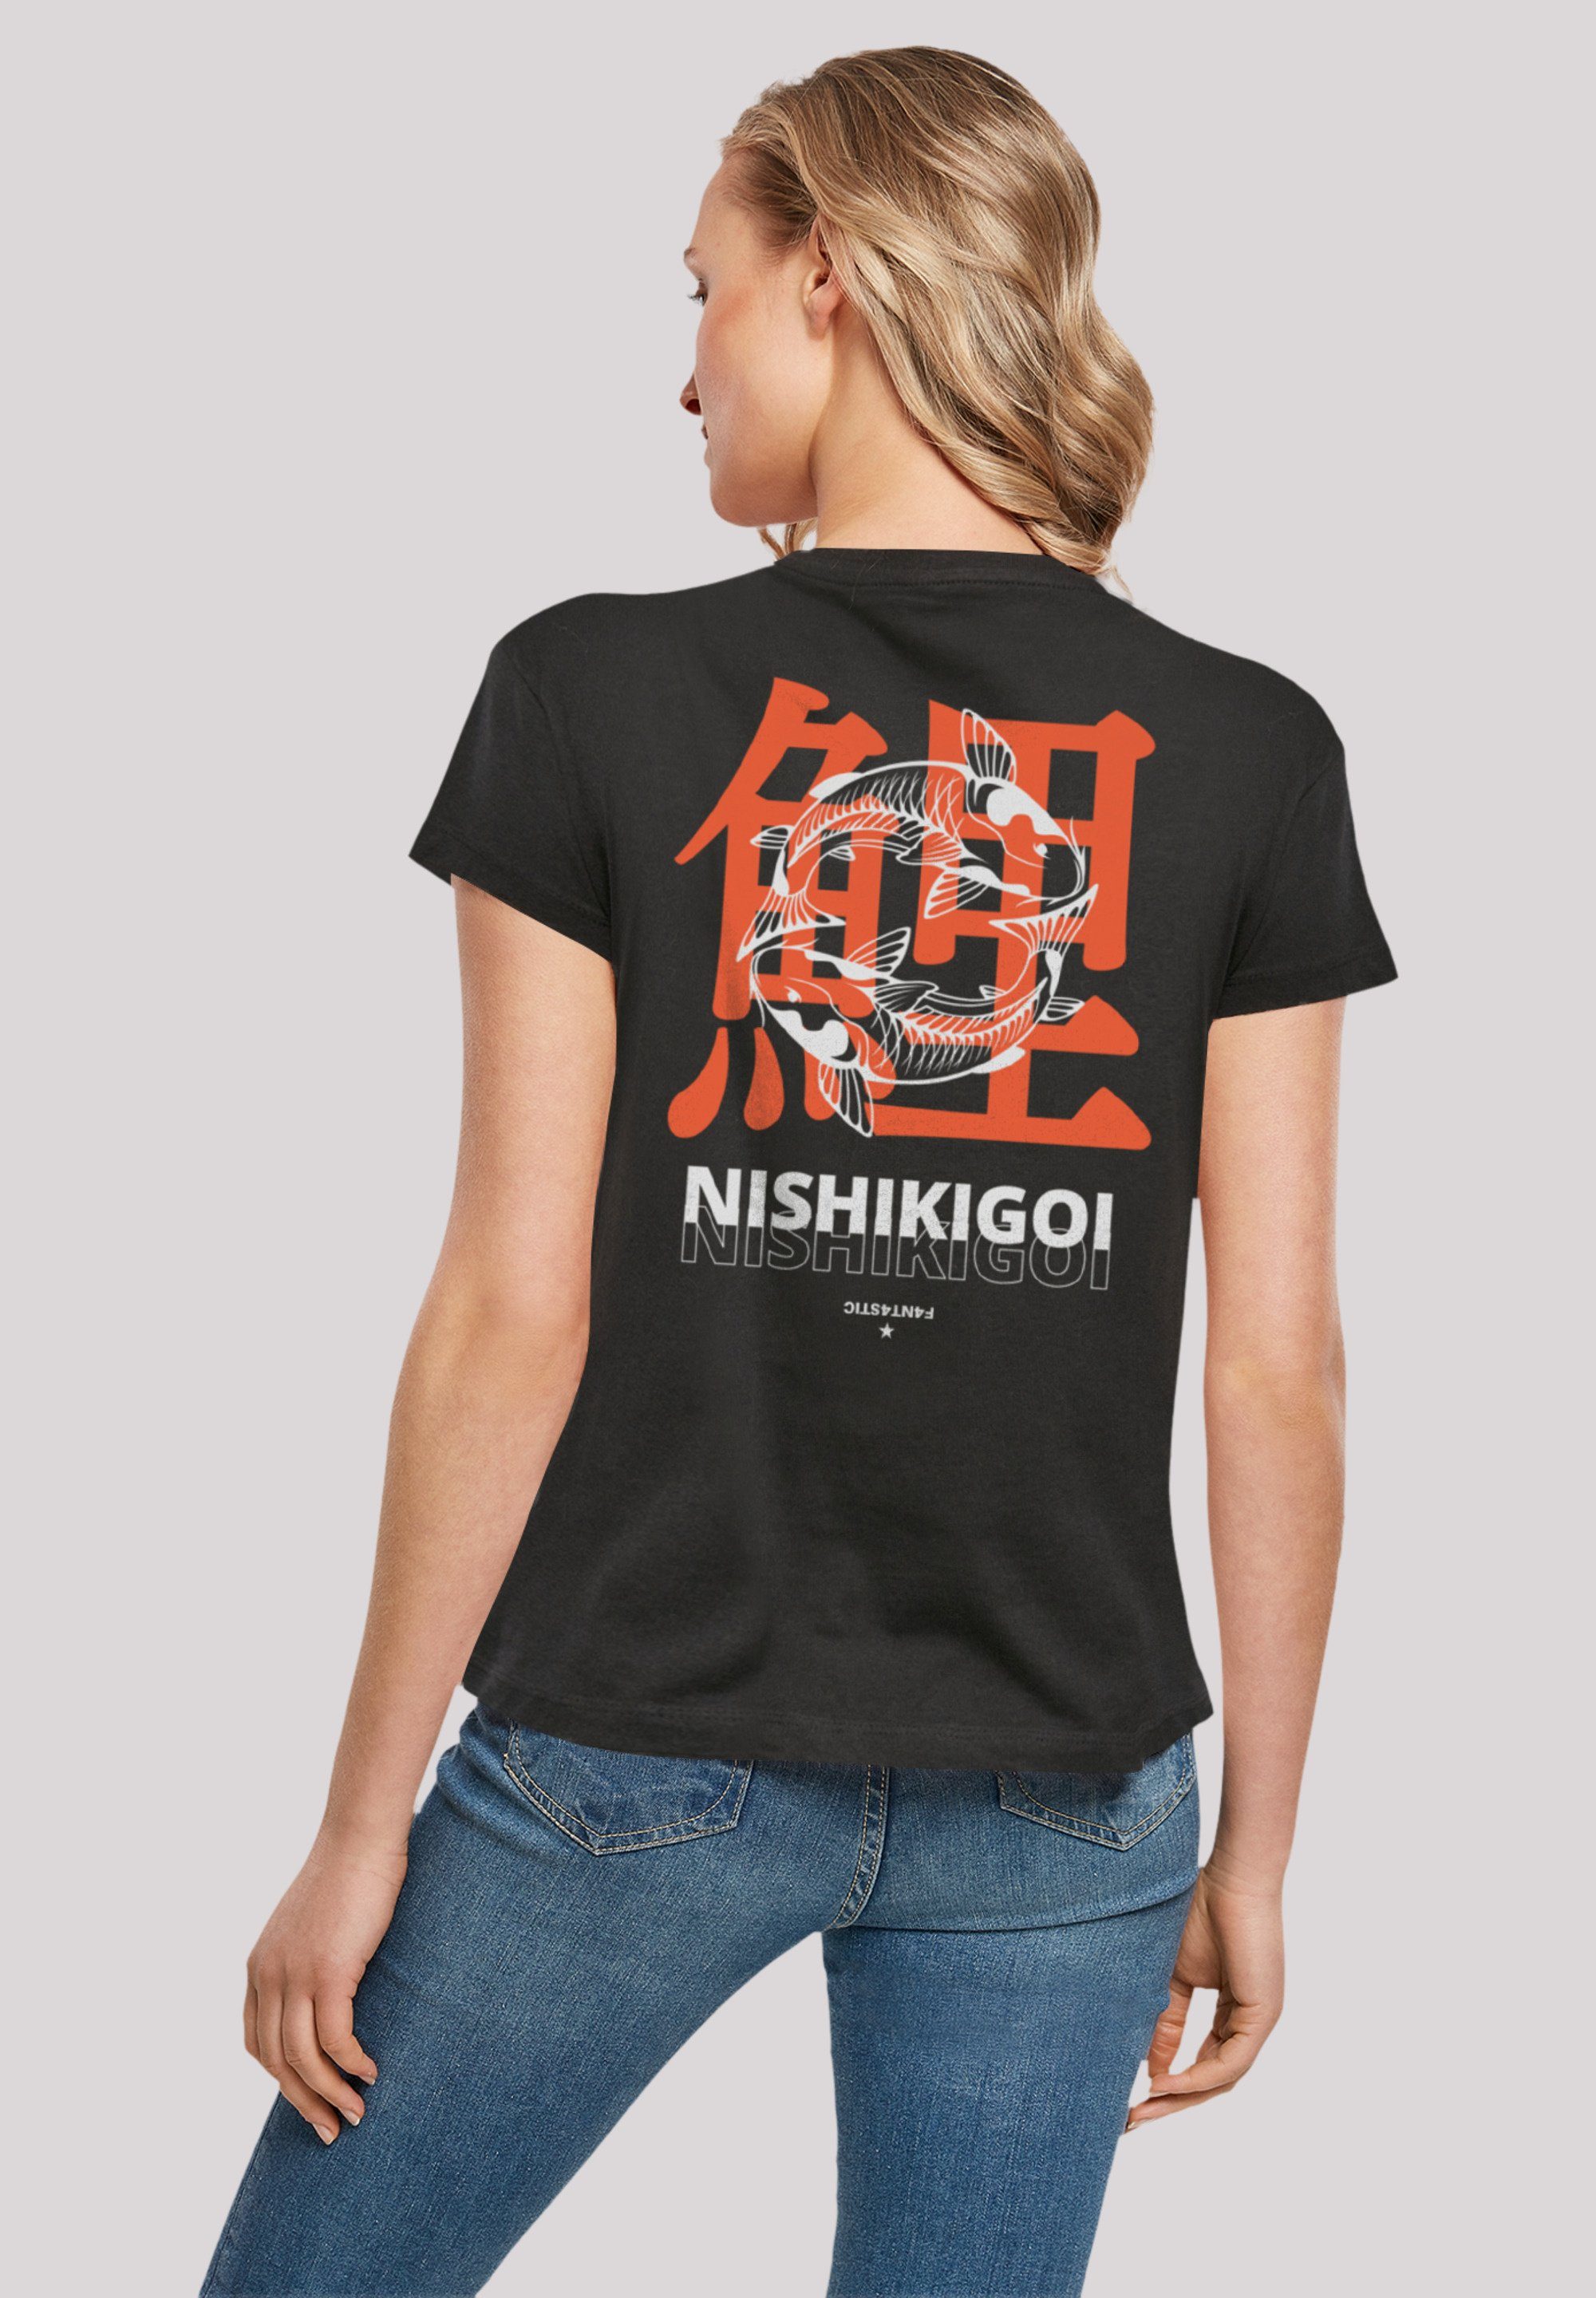 F4NT4STIC T-Shirt Nishikigoi Japan Print, Fällt weit aus, bitte eine Größe  kleiner bestellen